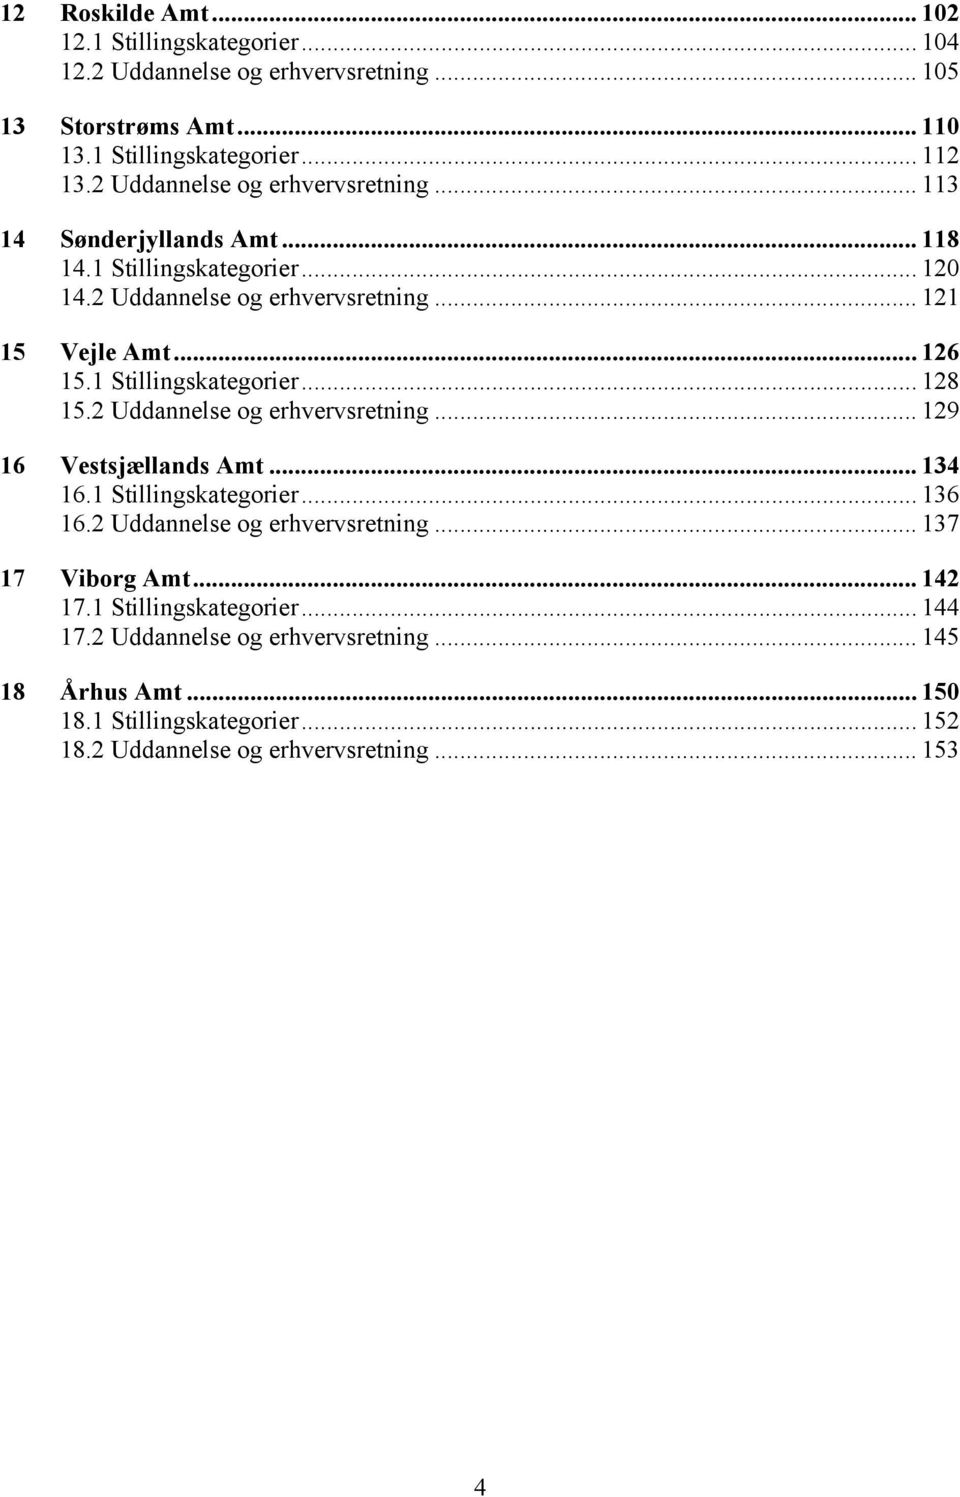 1 Stillingskategorier... 128 15.2 Uddannelse og erhvervsretning... 129 16 Vestsjællands Amt... 134 16.1 Stillingskategorier... 136 16.2 Uddannelse og erhvervsretning... 137 17 Viborg Amt.